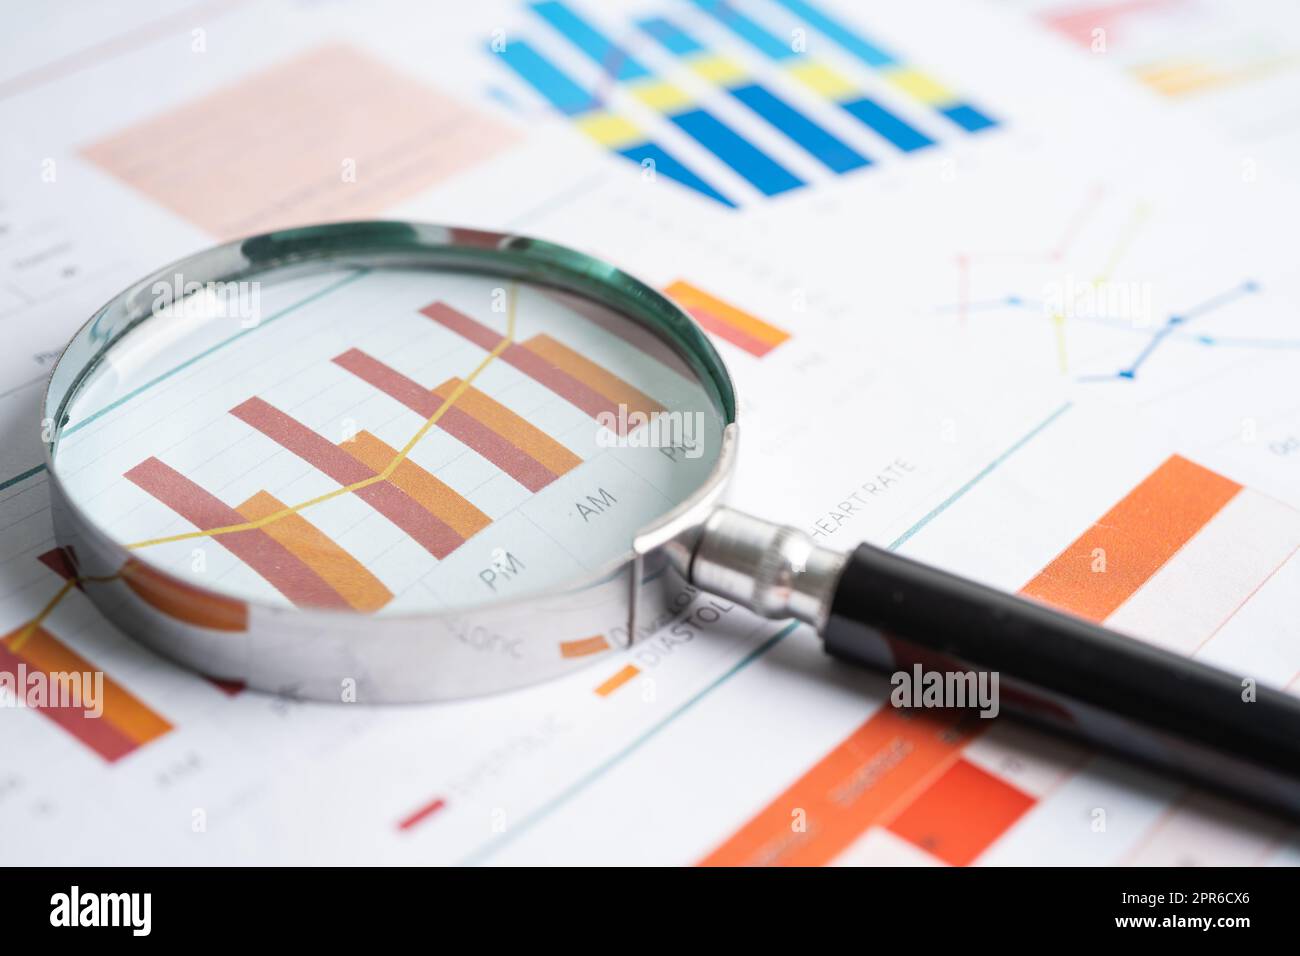 Vergrößerungsglas auf Diagrammpapier. Finanzentwicklung, Bankkonto, Statistik, Investment Analytic Research Data Economy, Börsenhandel, Business Office Concept. Stockfoto